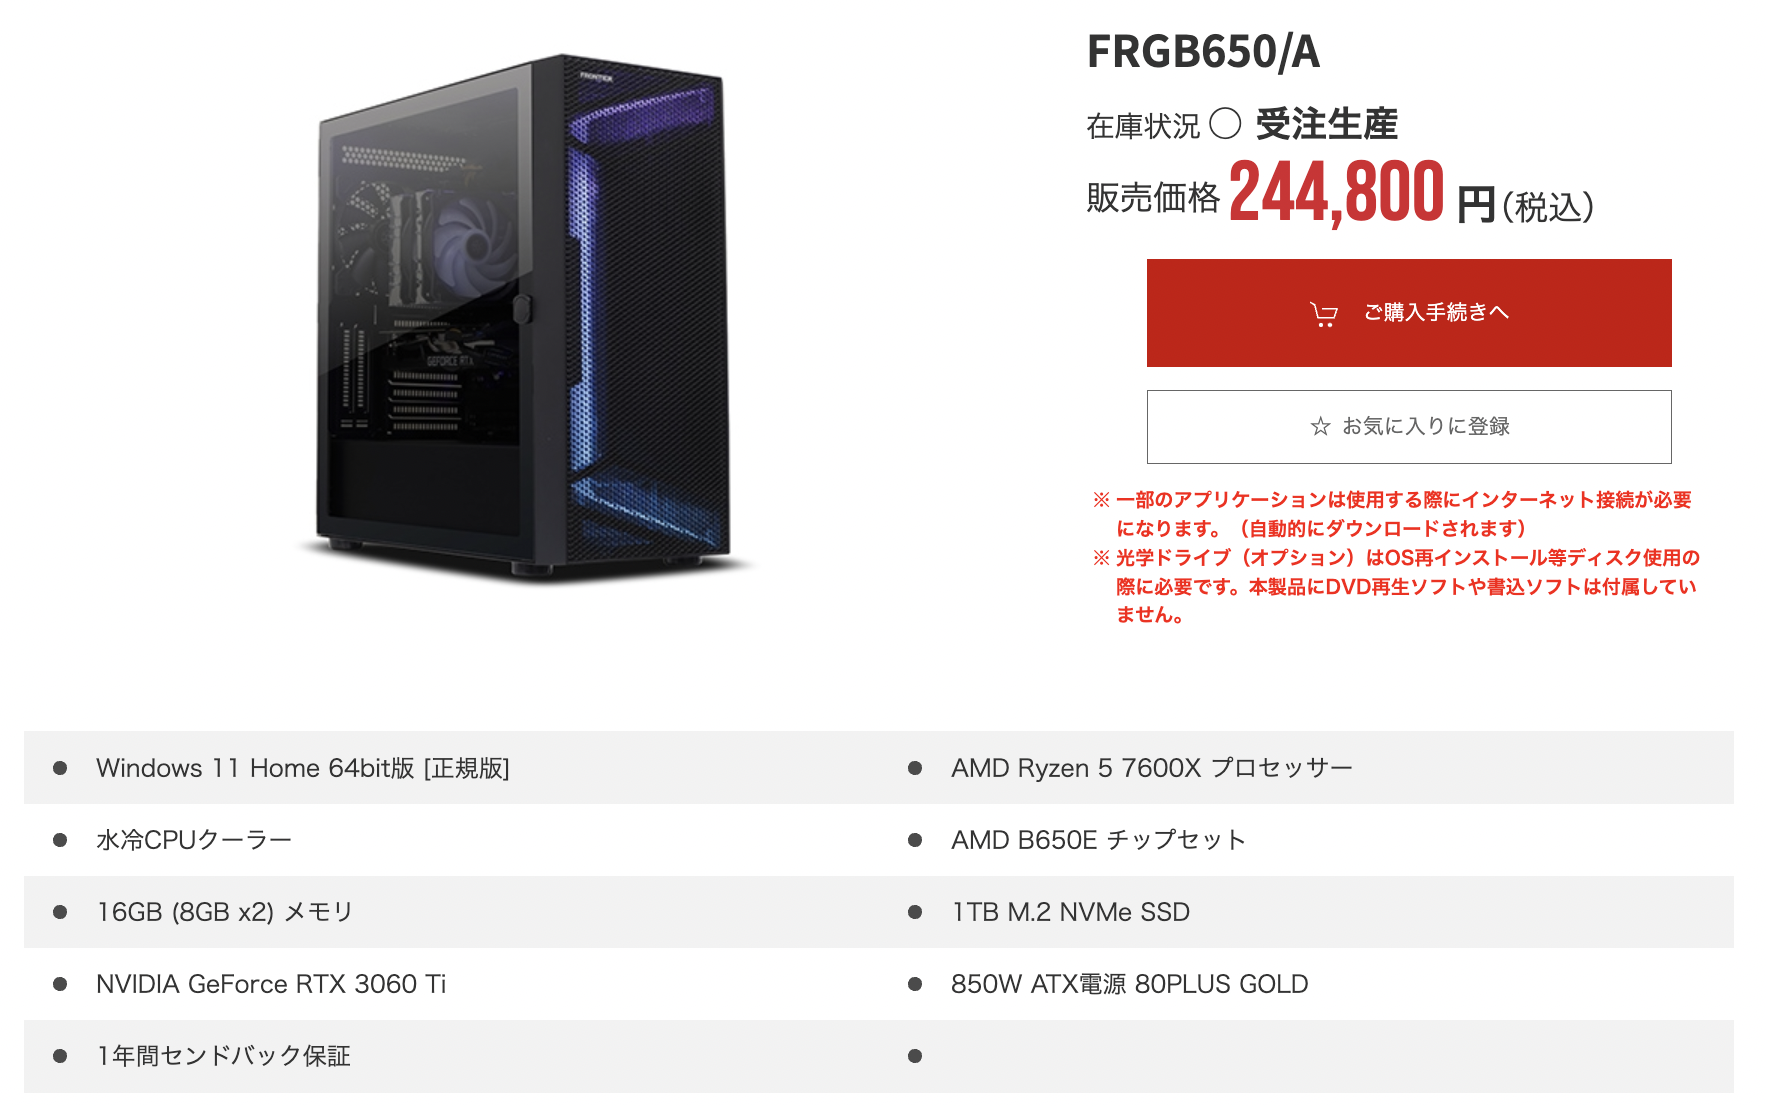 FRGB650/A